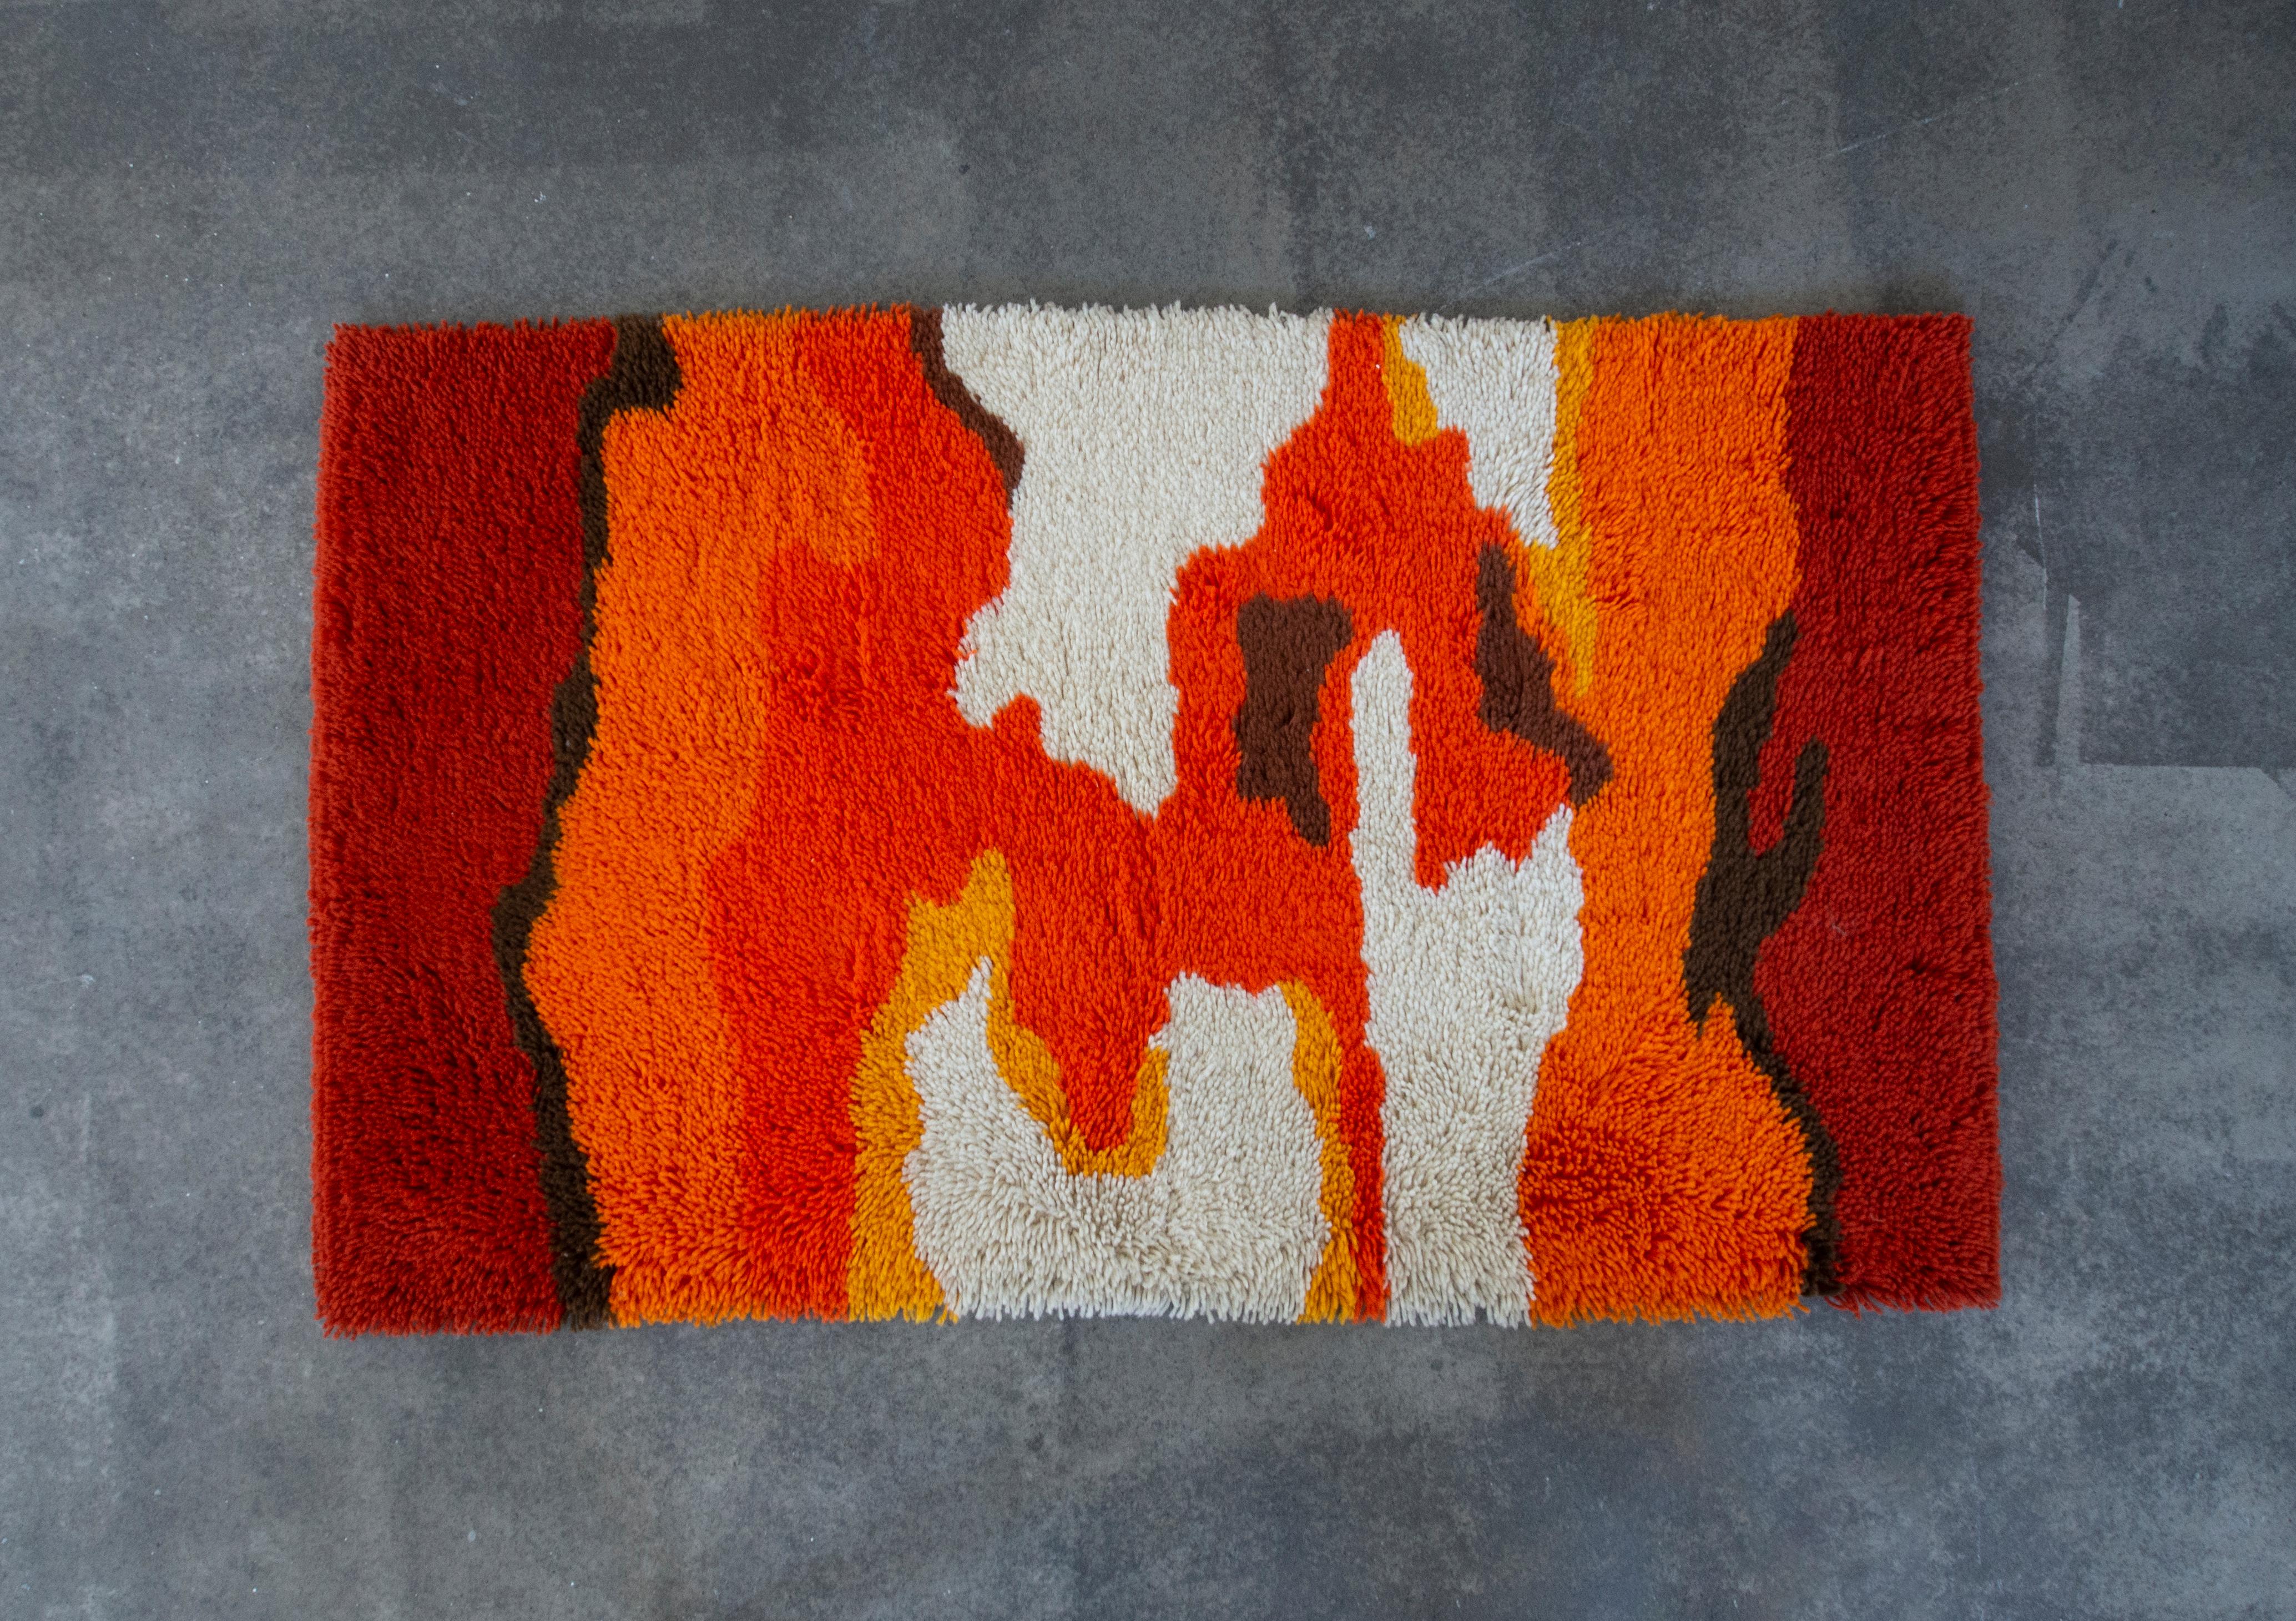 Dans ce listing, vous trouverez un magnifique tapis Rya vibrant en jaune, orange, rouge, marron et blanc. Il est composé de longs fils, ce qui crée une sensation de peluche sous vos pieds. Le flux organique des couleurs crée un sentiment de chaleur